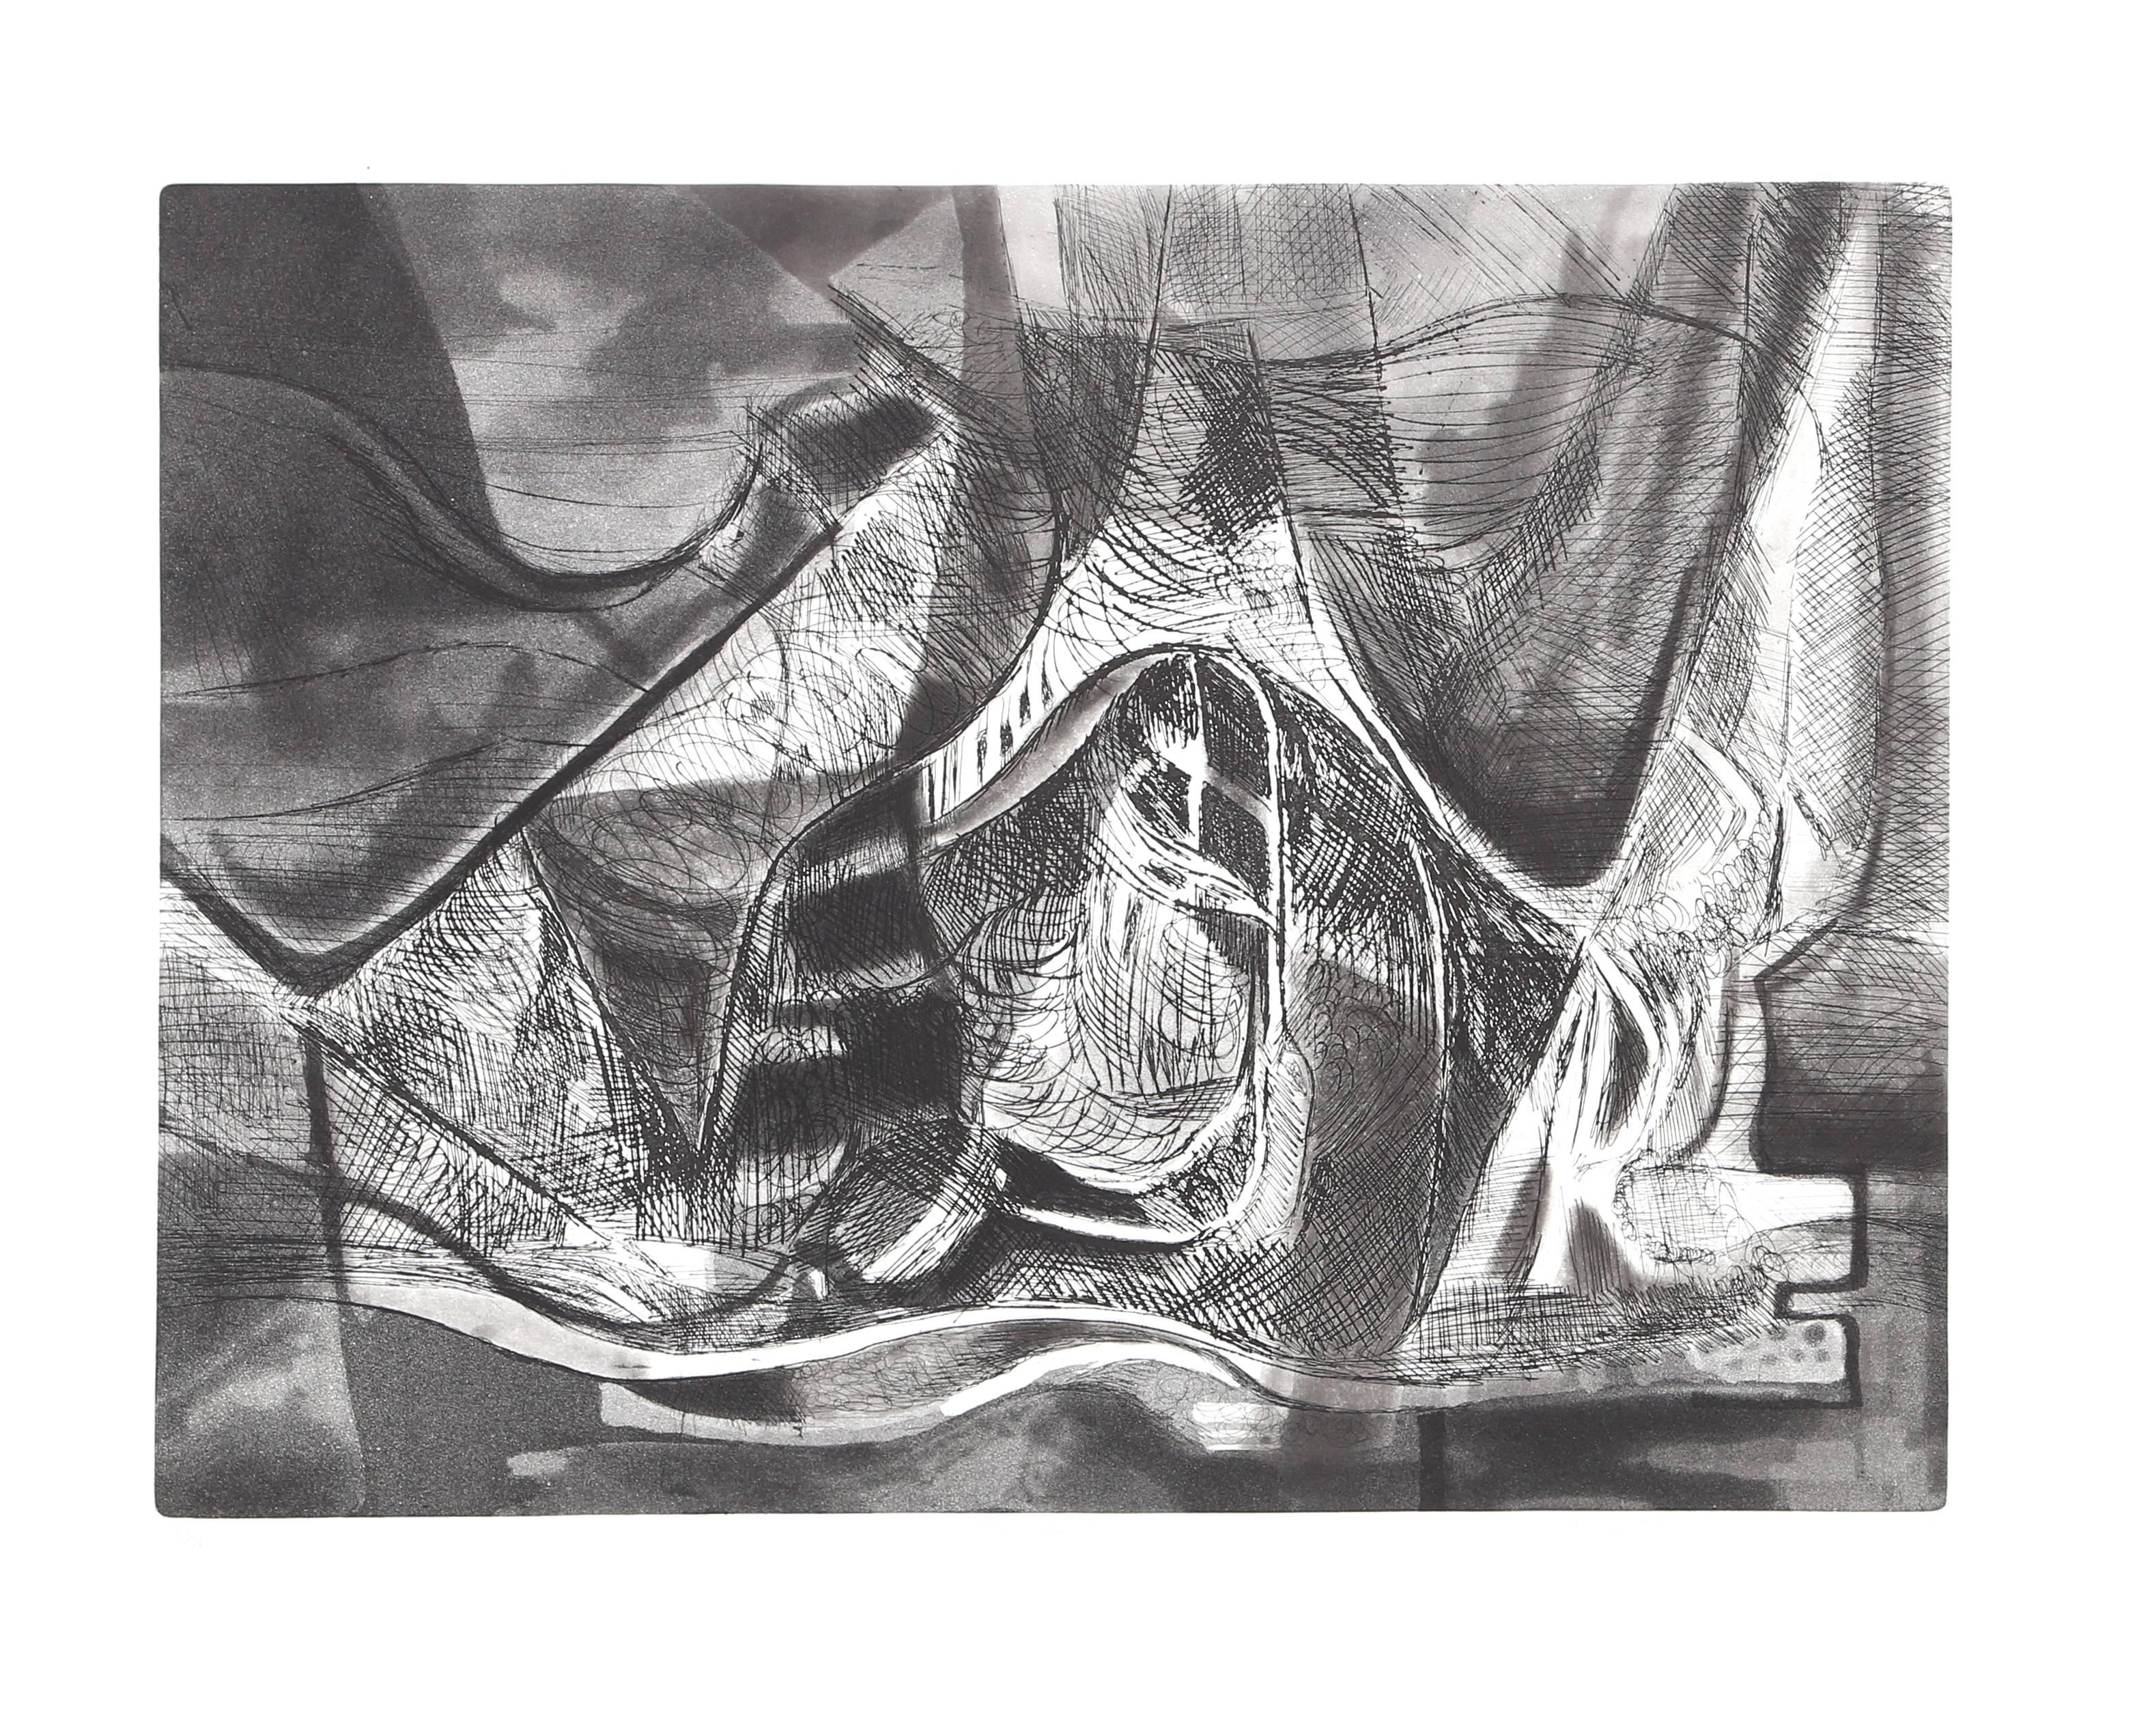 Roberto Burle Marx Abstract Print - Urumba